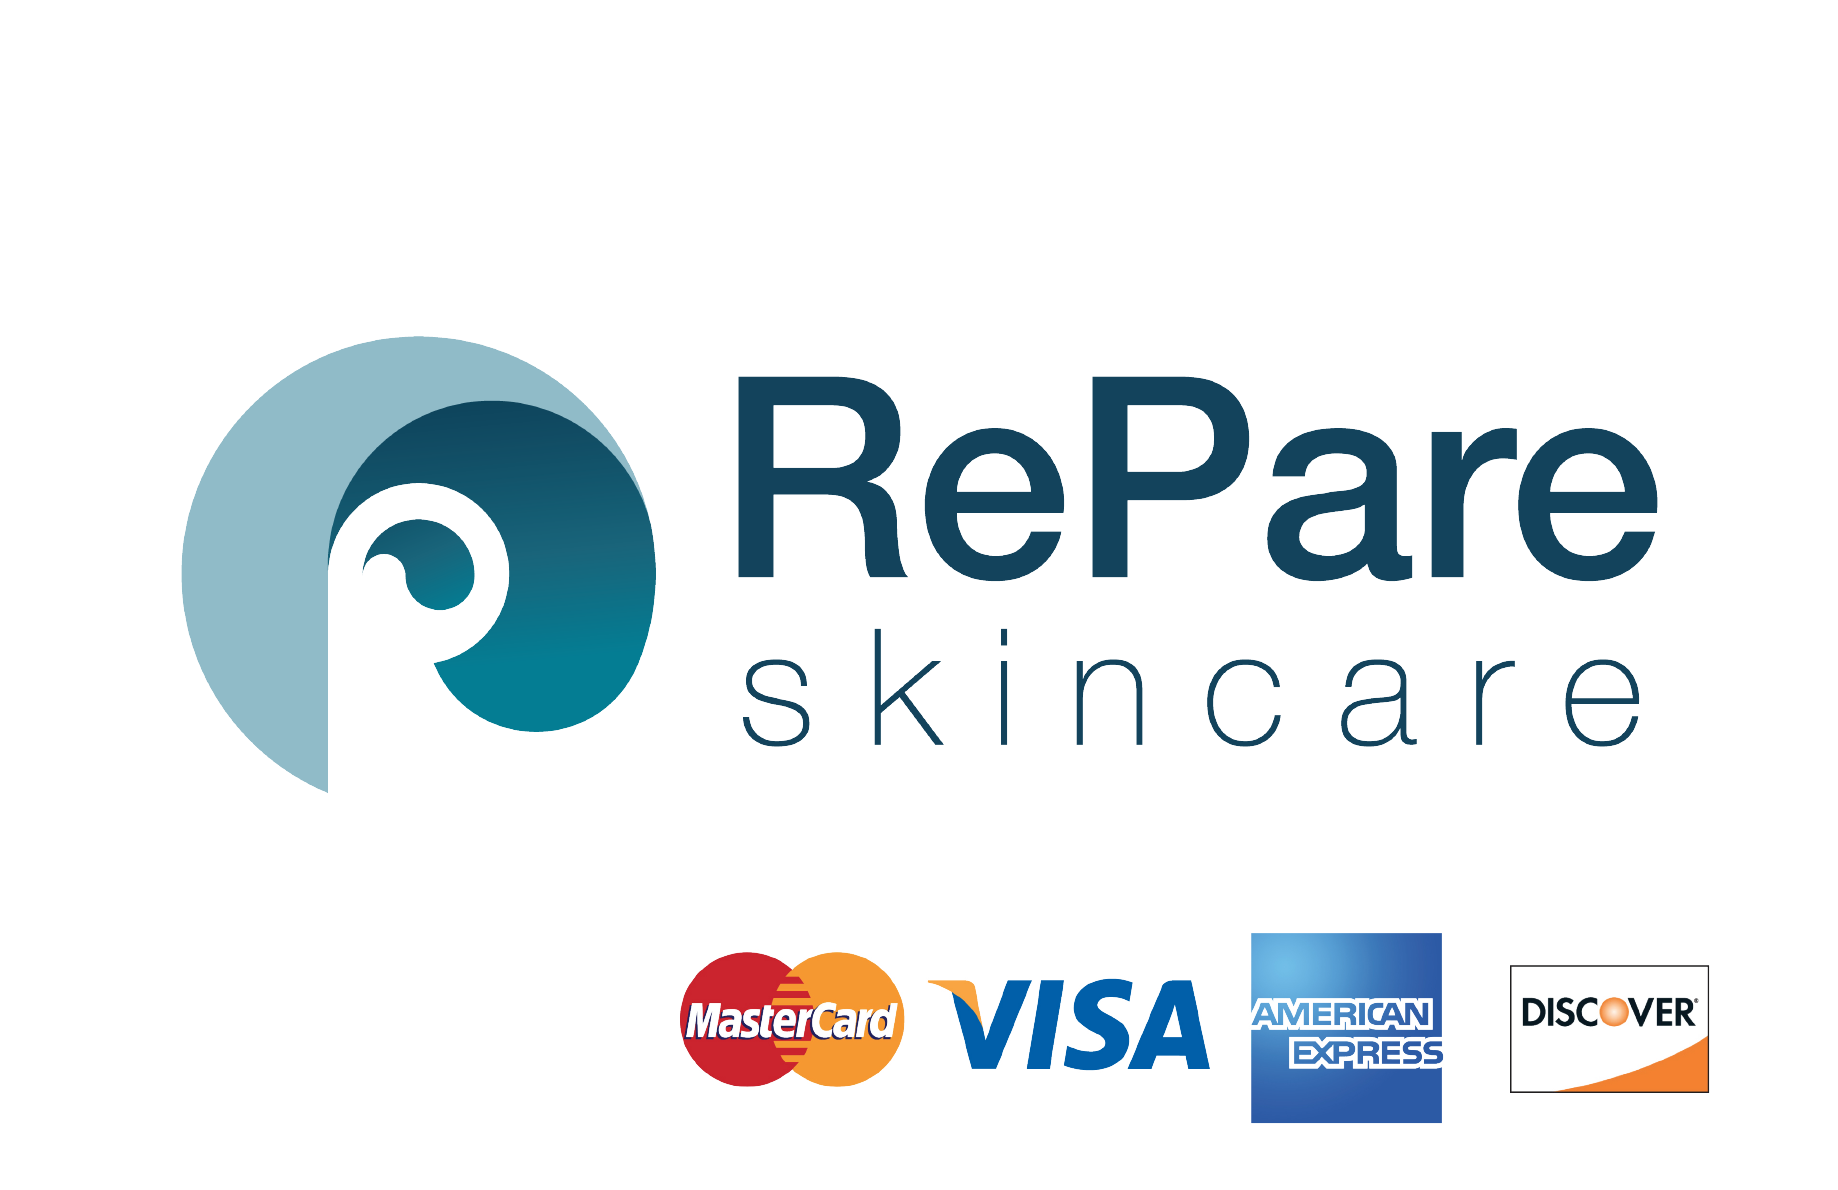 Peel Prep Solution – Société Clinical Skincare